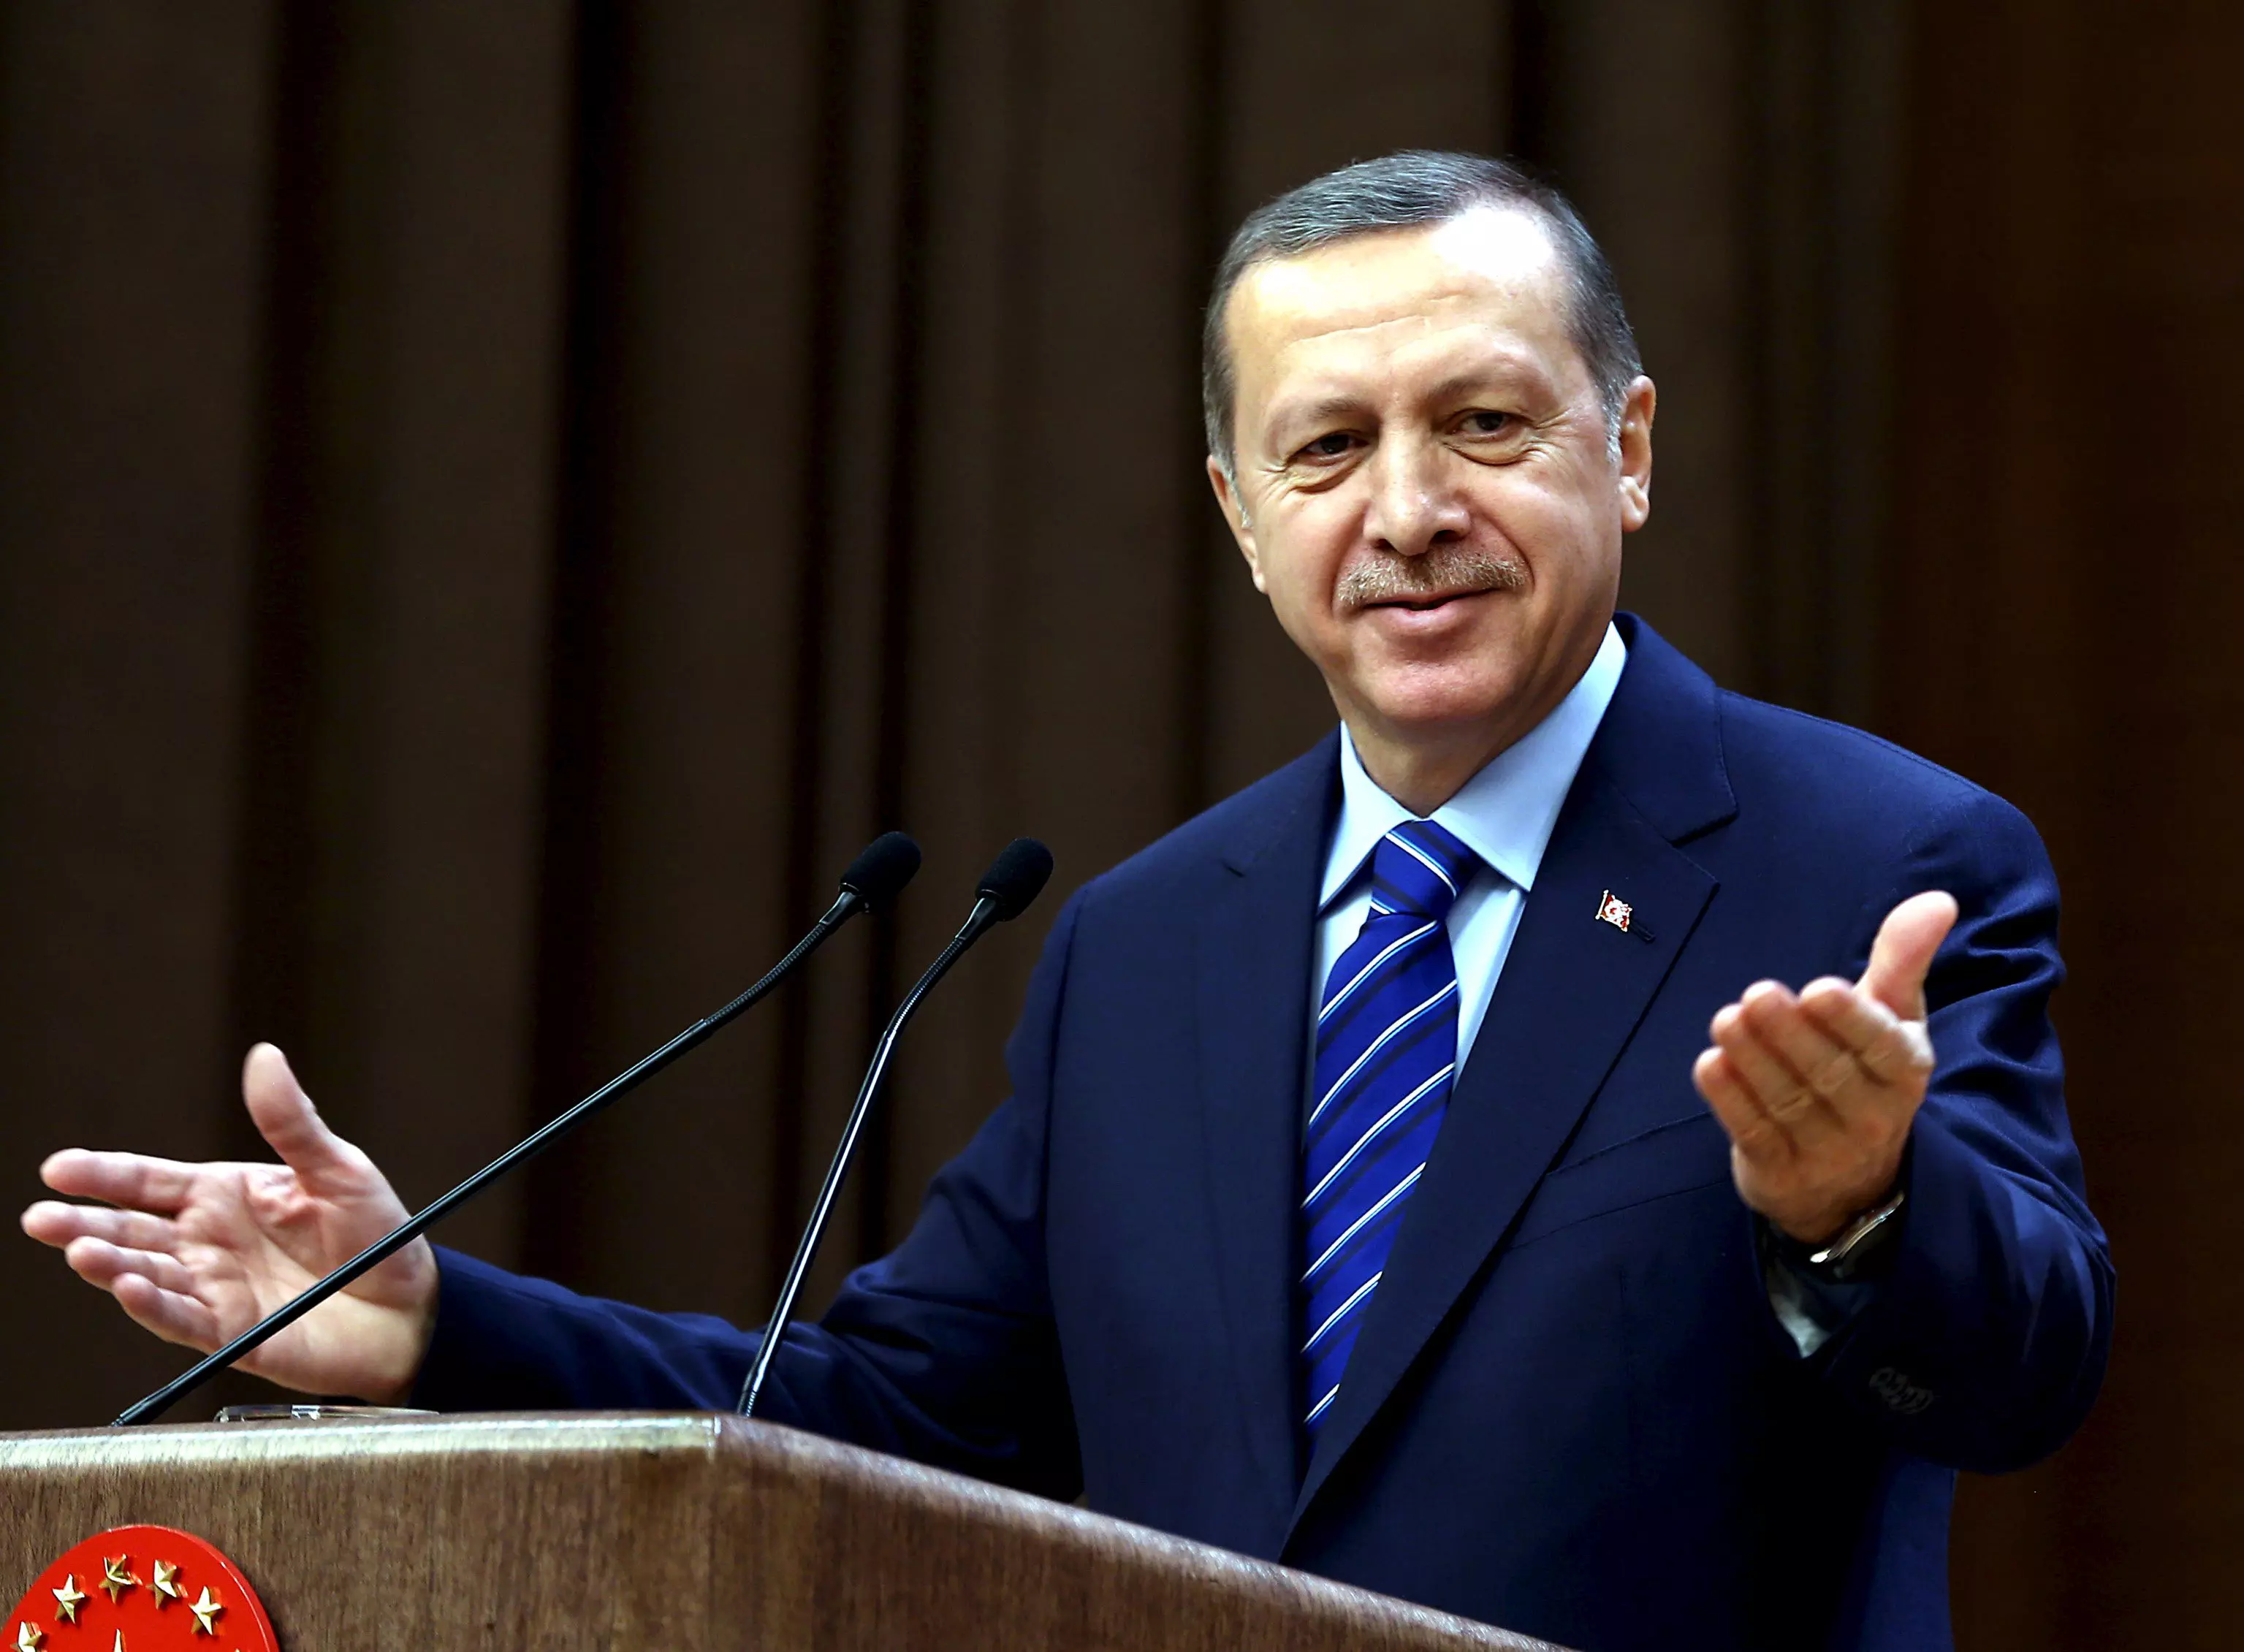 נשיא טורקיה, רג'פ טייפ ארדואן